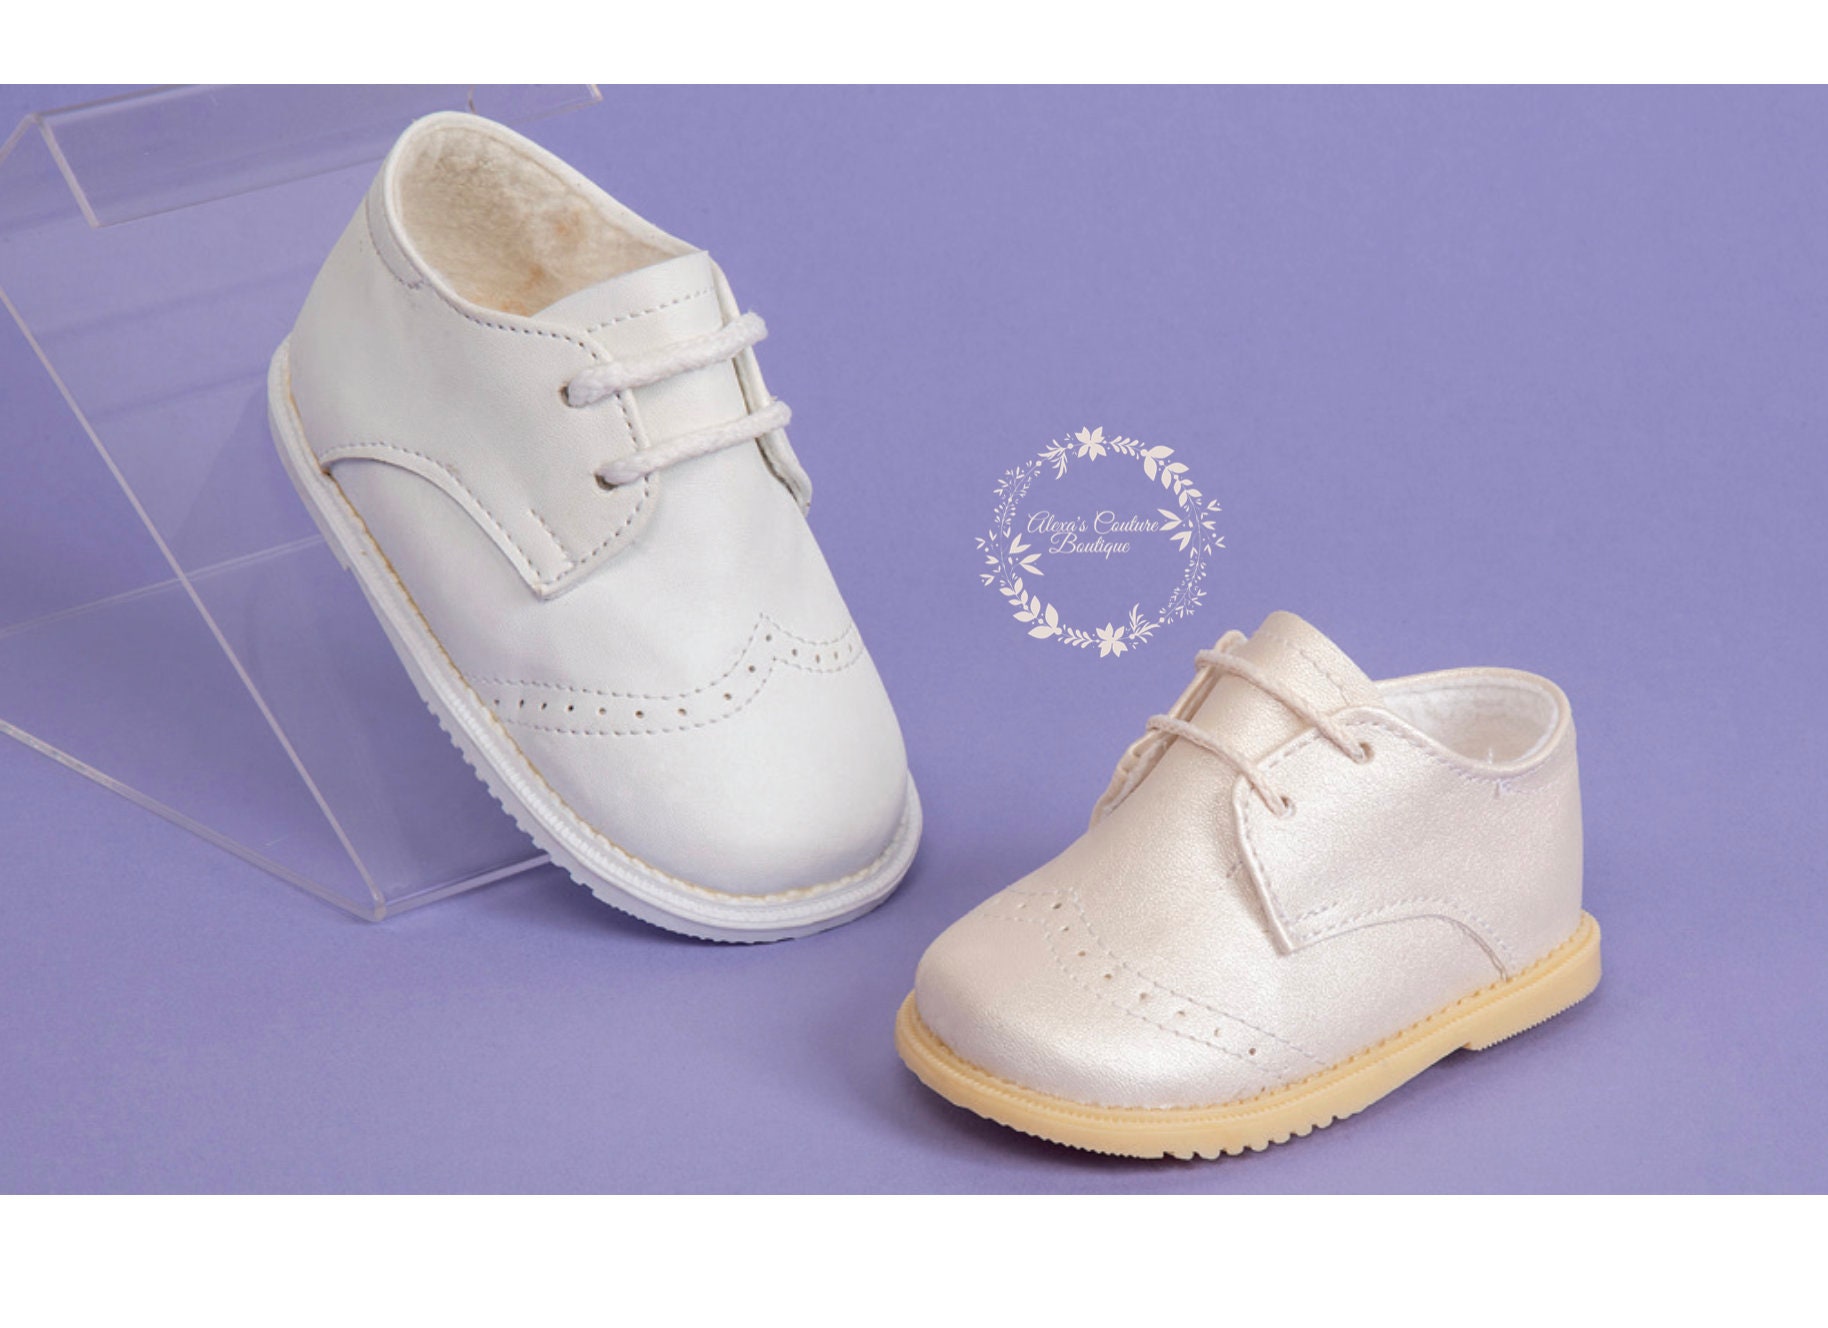 Botines de niño Zapatos Zapatos para niño Patucos y calzado de bebé Zapatos de bautizo de baby boy de lino irlandés blanco o marfil Zapatos de lino para niños zapatos de bautismo para niños 